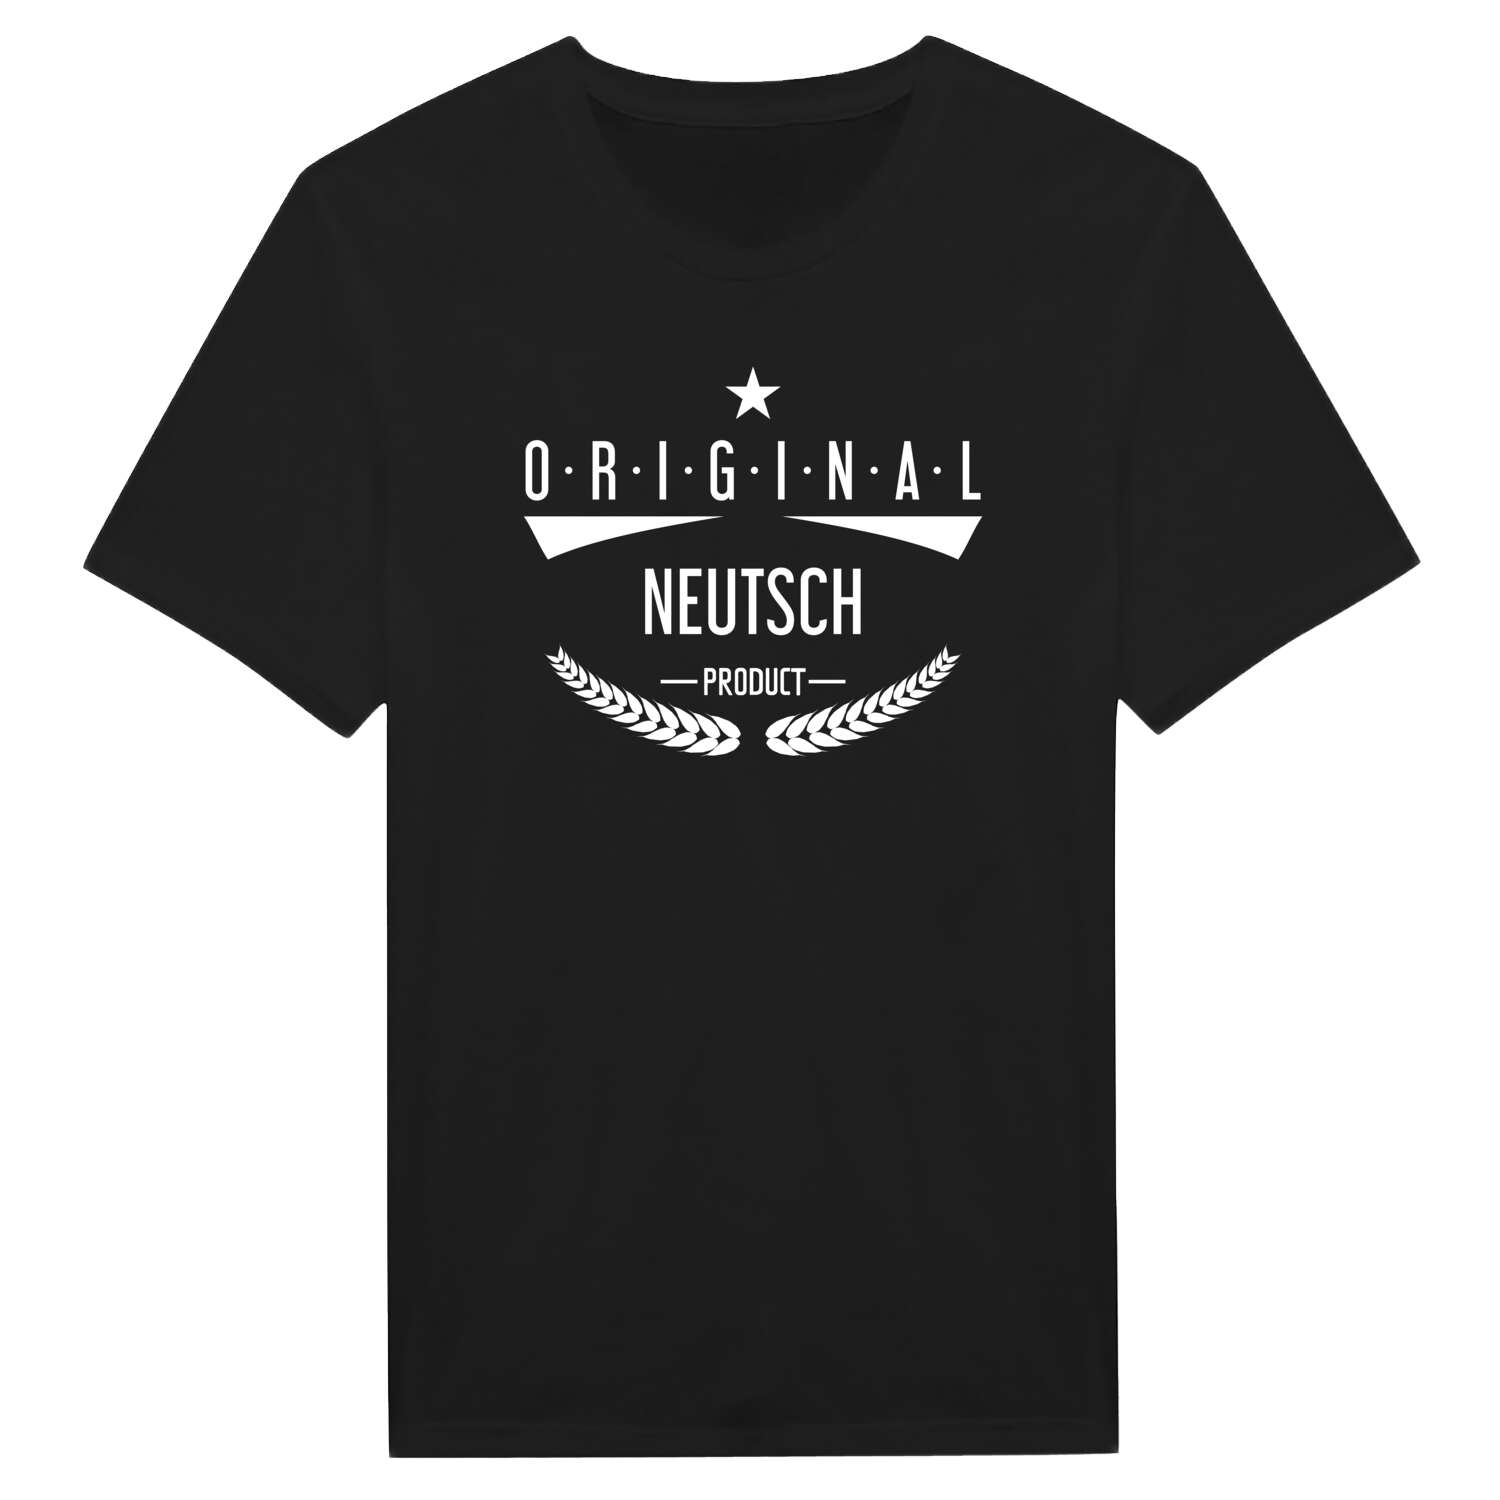 Neutsch T-Shirt »Original Product«